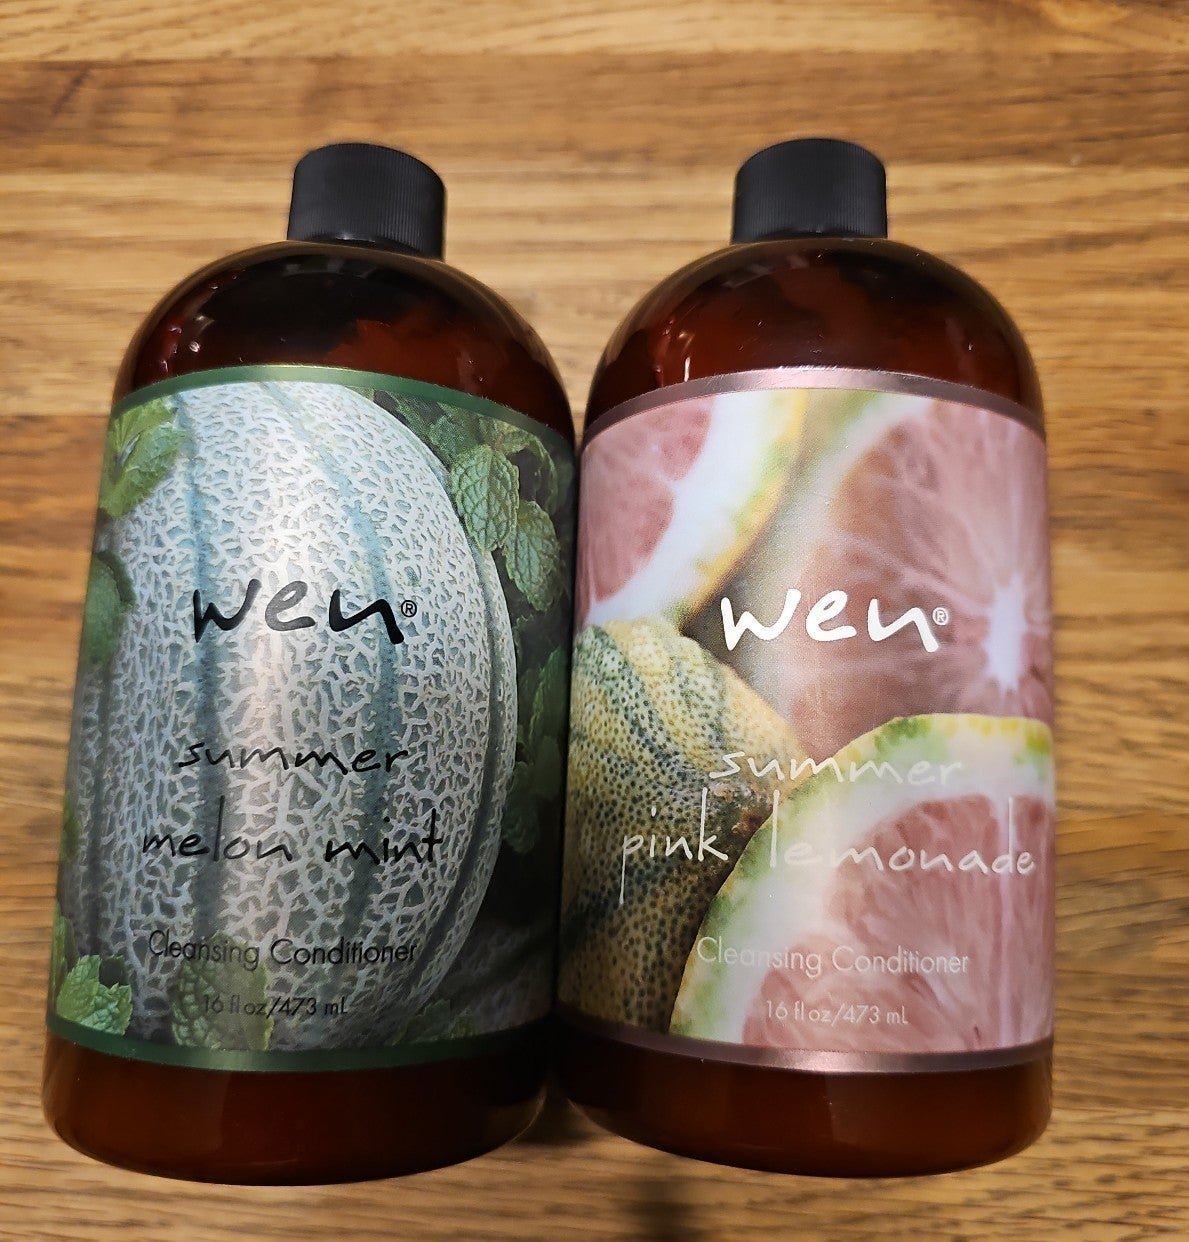 Wen - cleansing conditioner - Summer Melon mint & Pink Lemonade - 16 oz ea JWPi5IFGd